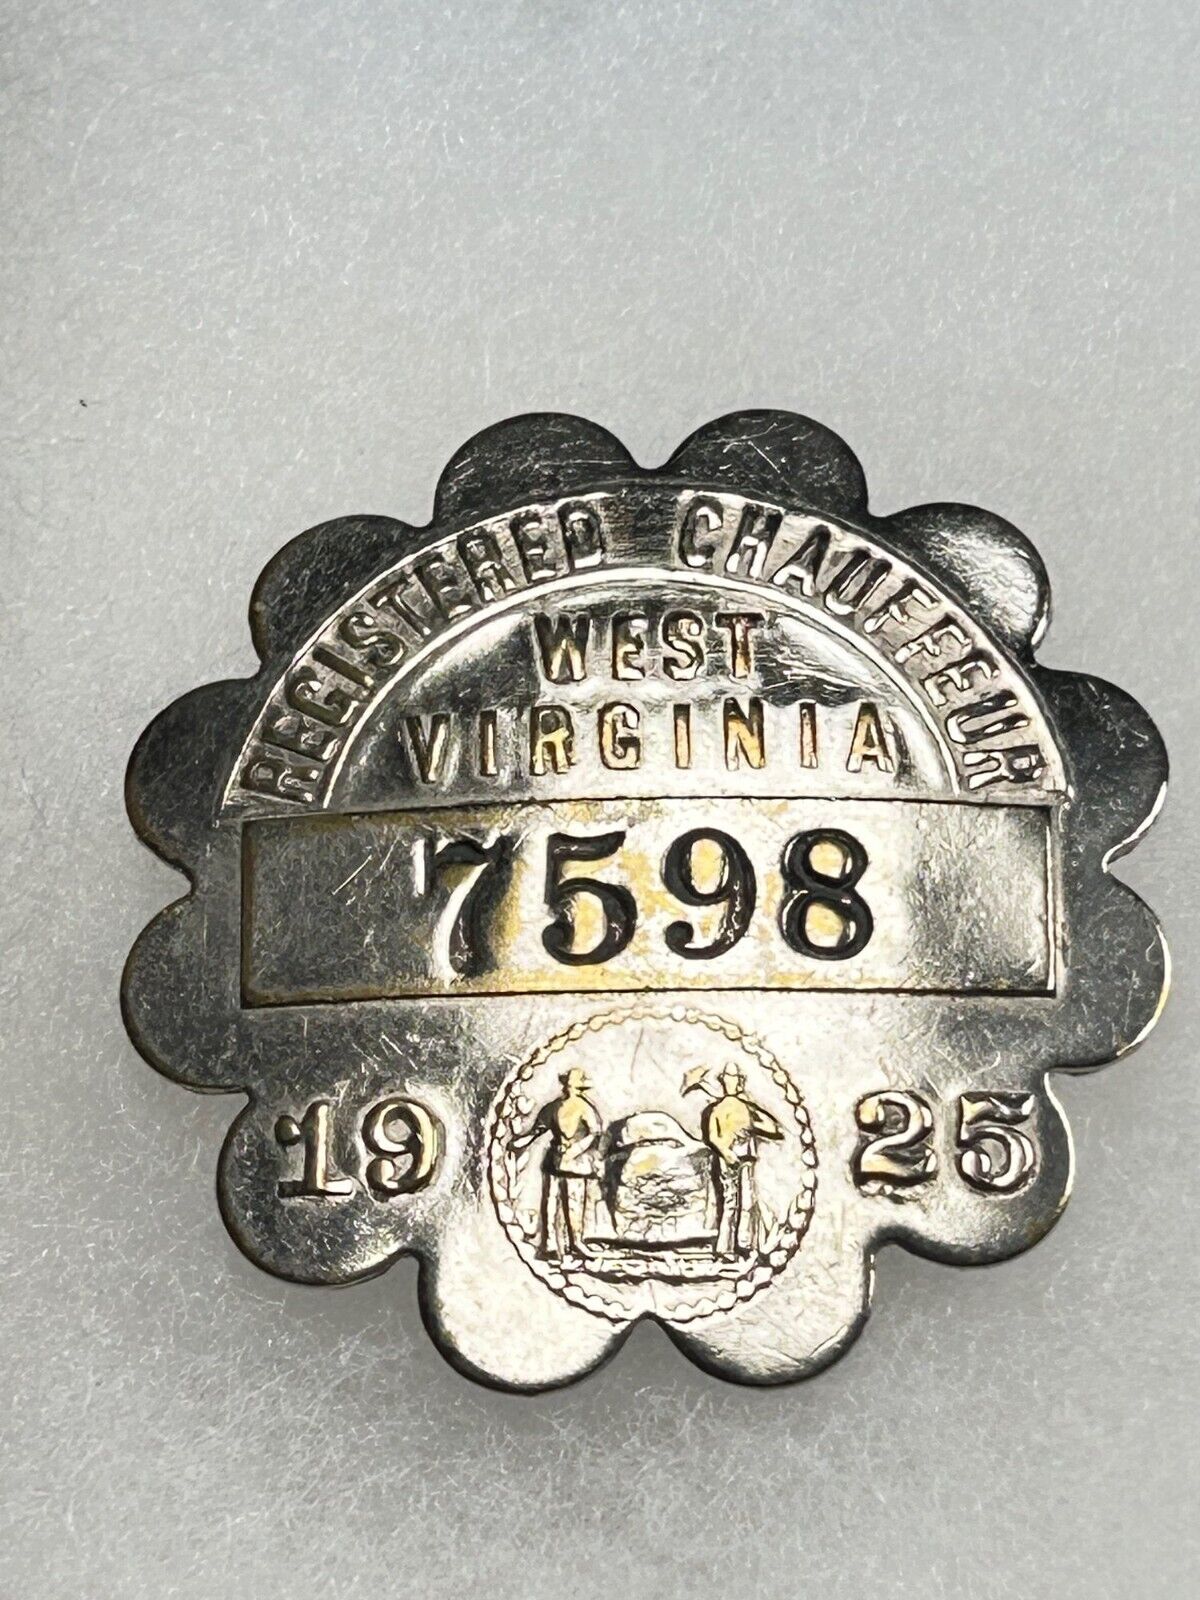 1925 WEST VIRGINIA CHAUFFEUR / DRIVER BADGE #7598